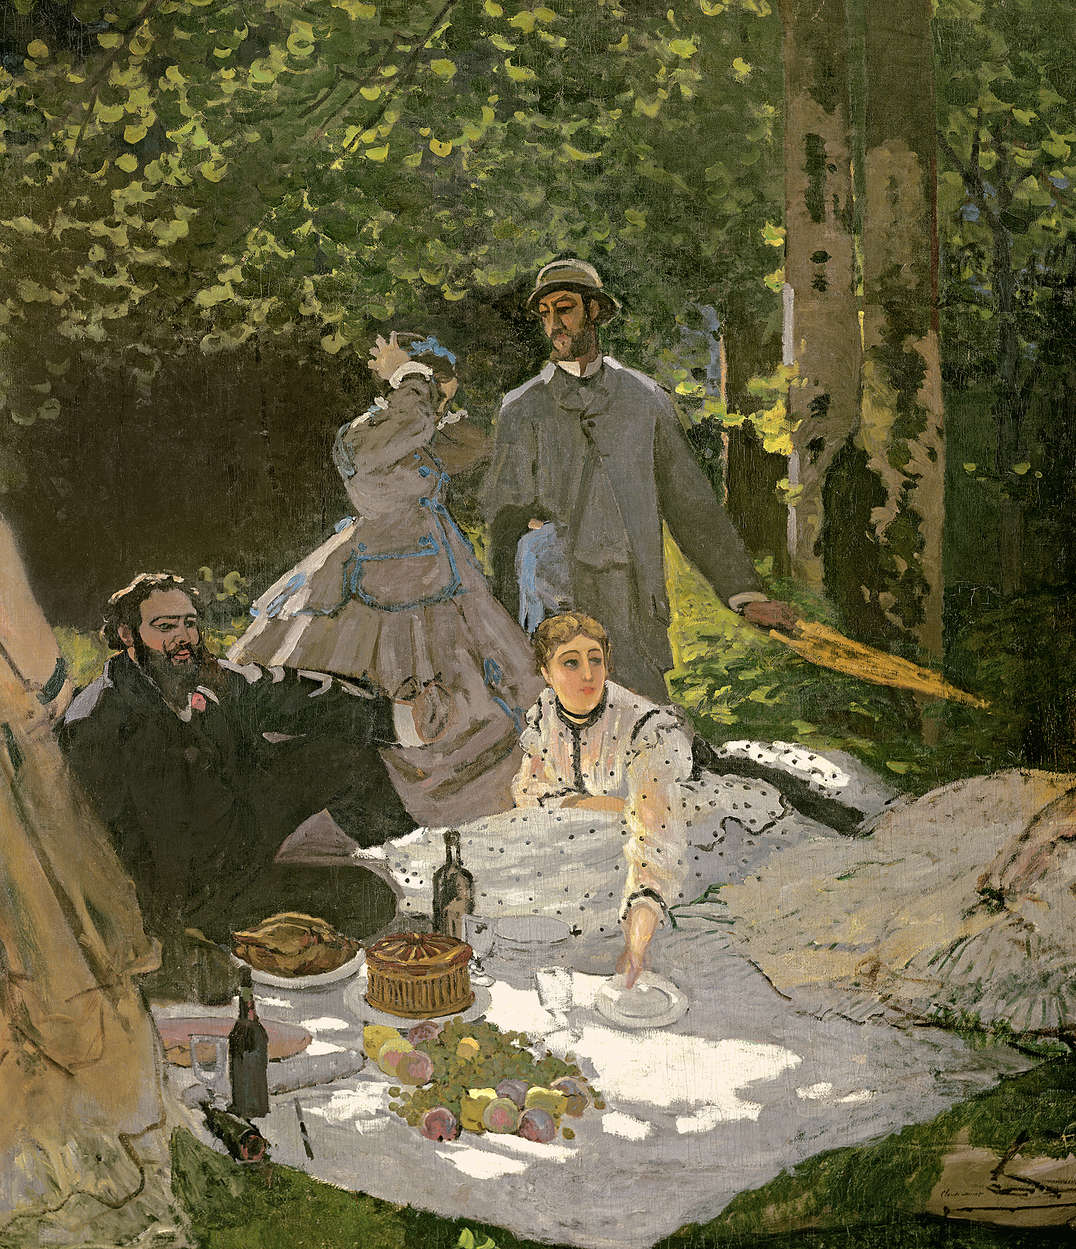             Fototapete "Weg in Monets Garten in Giverny" von Claude Monet
        